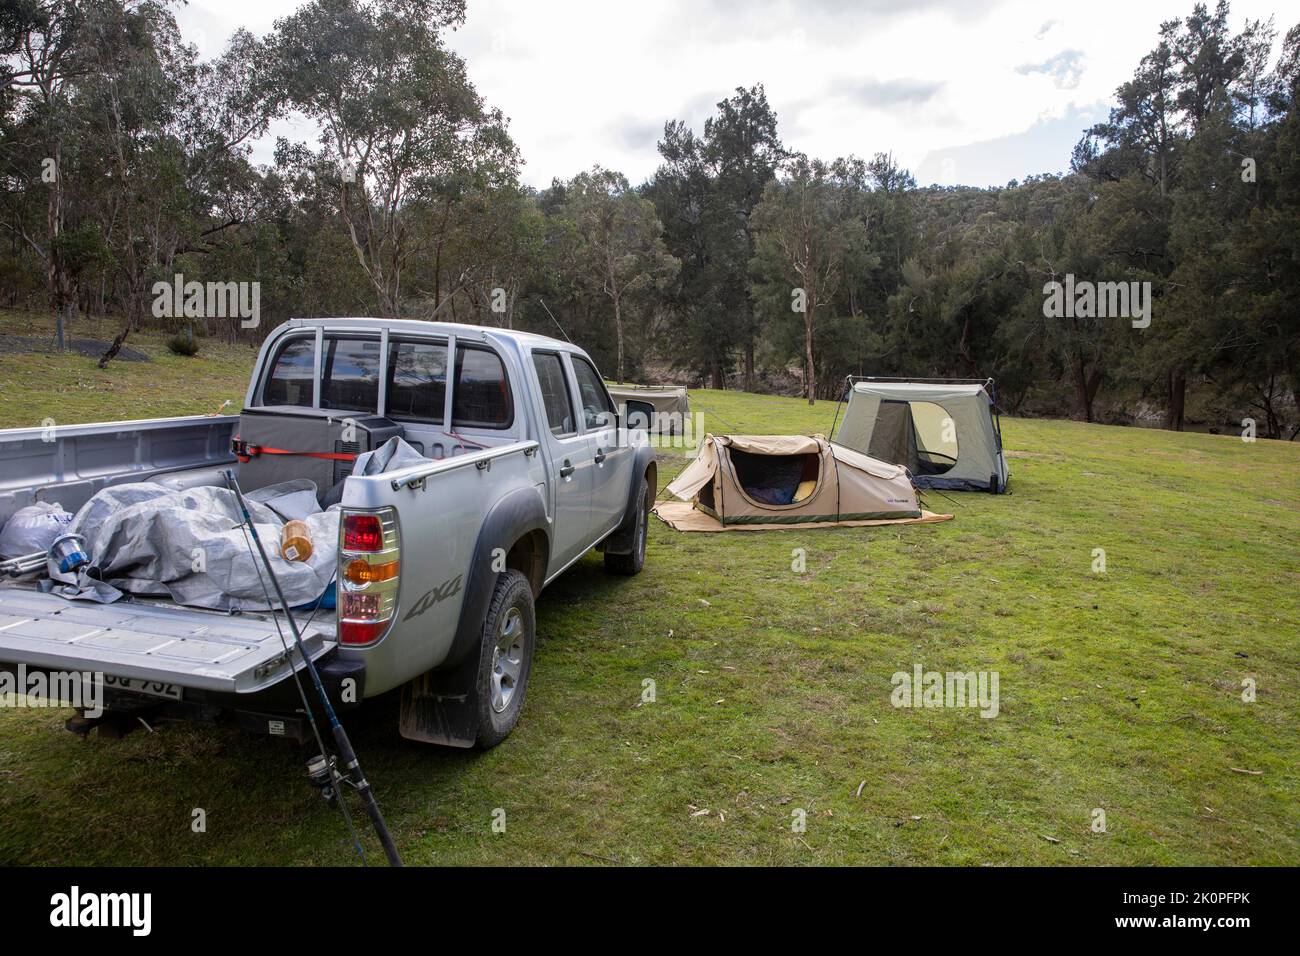 Camping australien dans le parc national de la rivière Abercrombie dans la région de Nouvelle-Galles du Sud, tente de bâches et véhicule Mazda Ute, Australie Banque D'Images